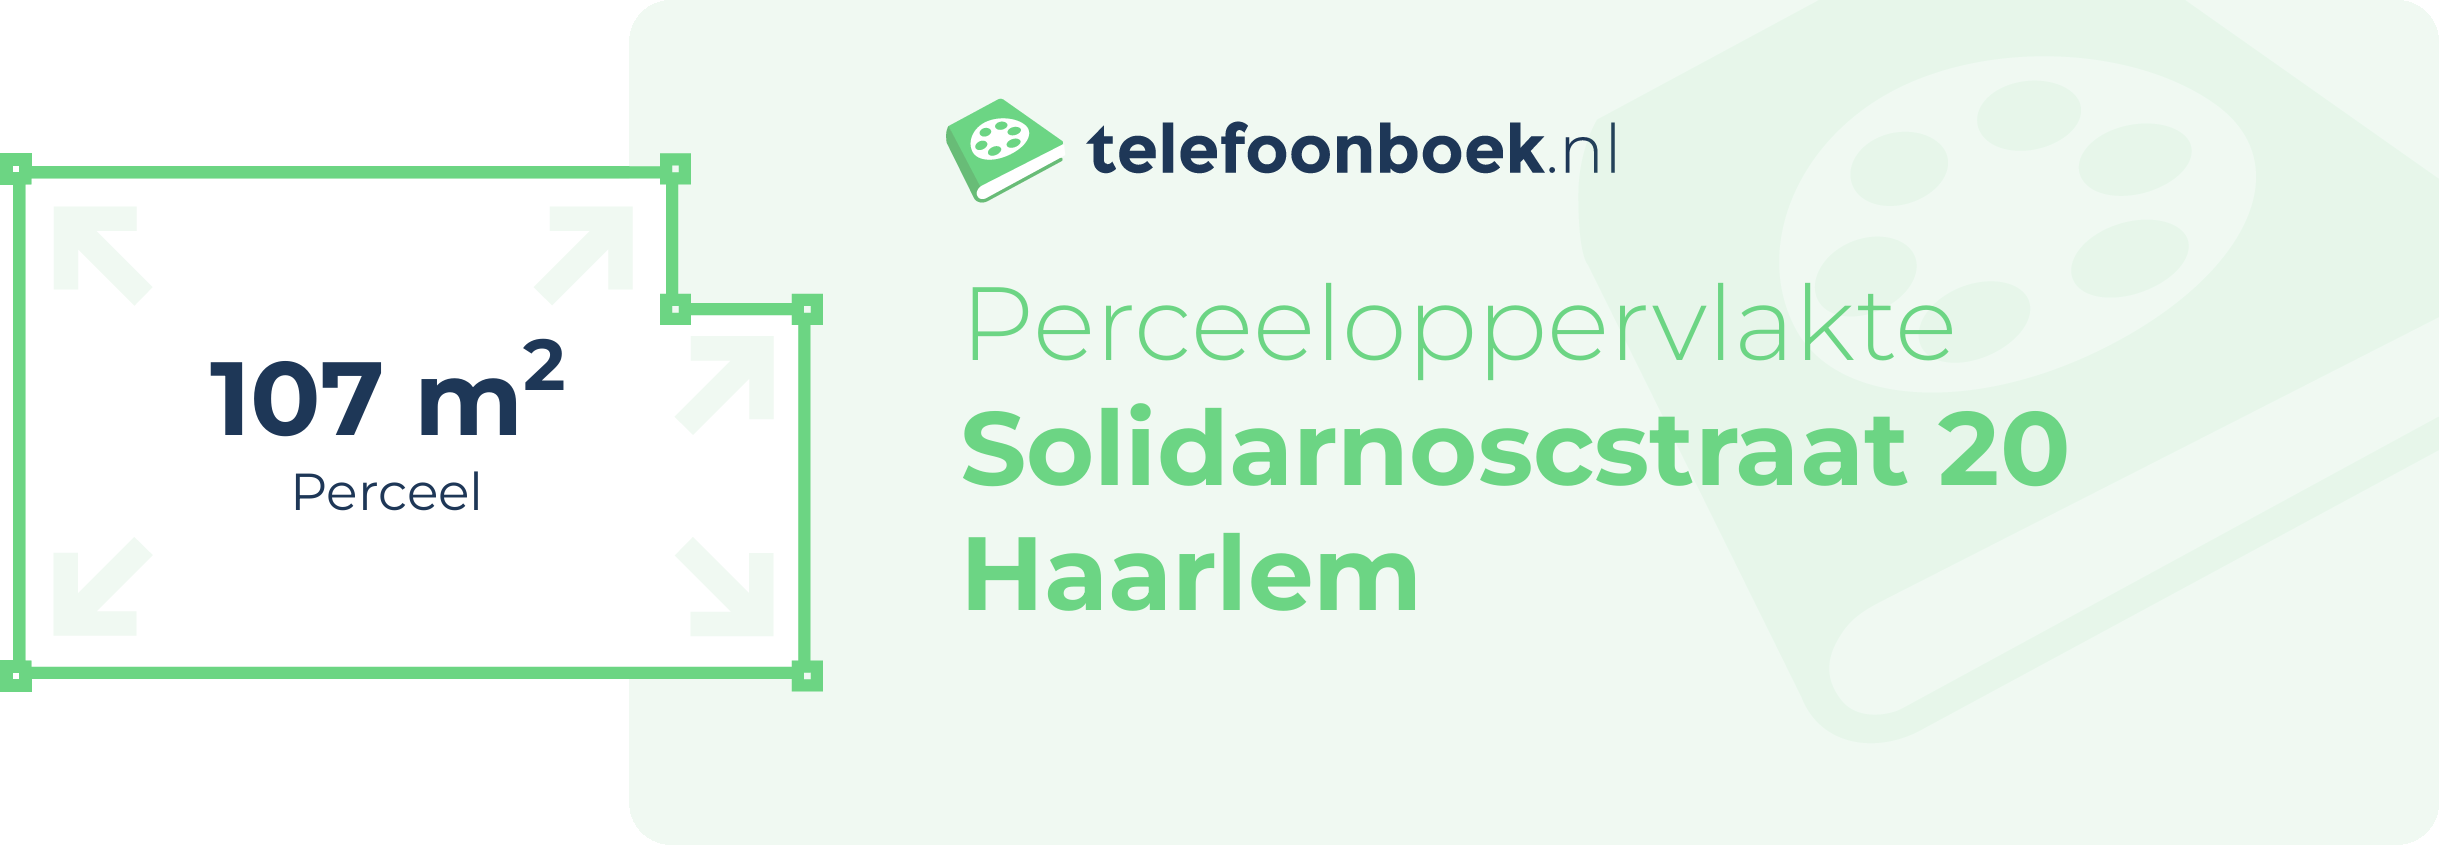 Perceeloppervlakte Solidarnoscstraat 20 Haarlem